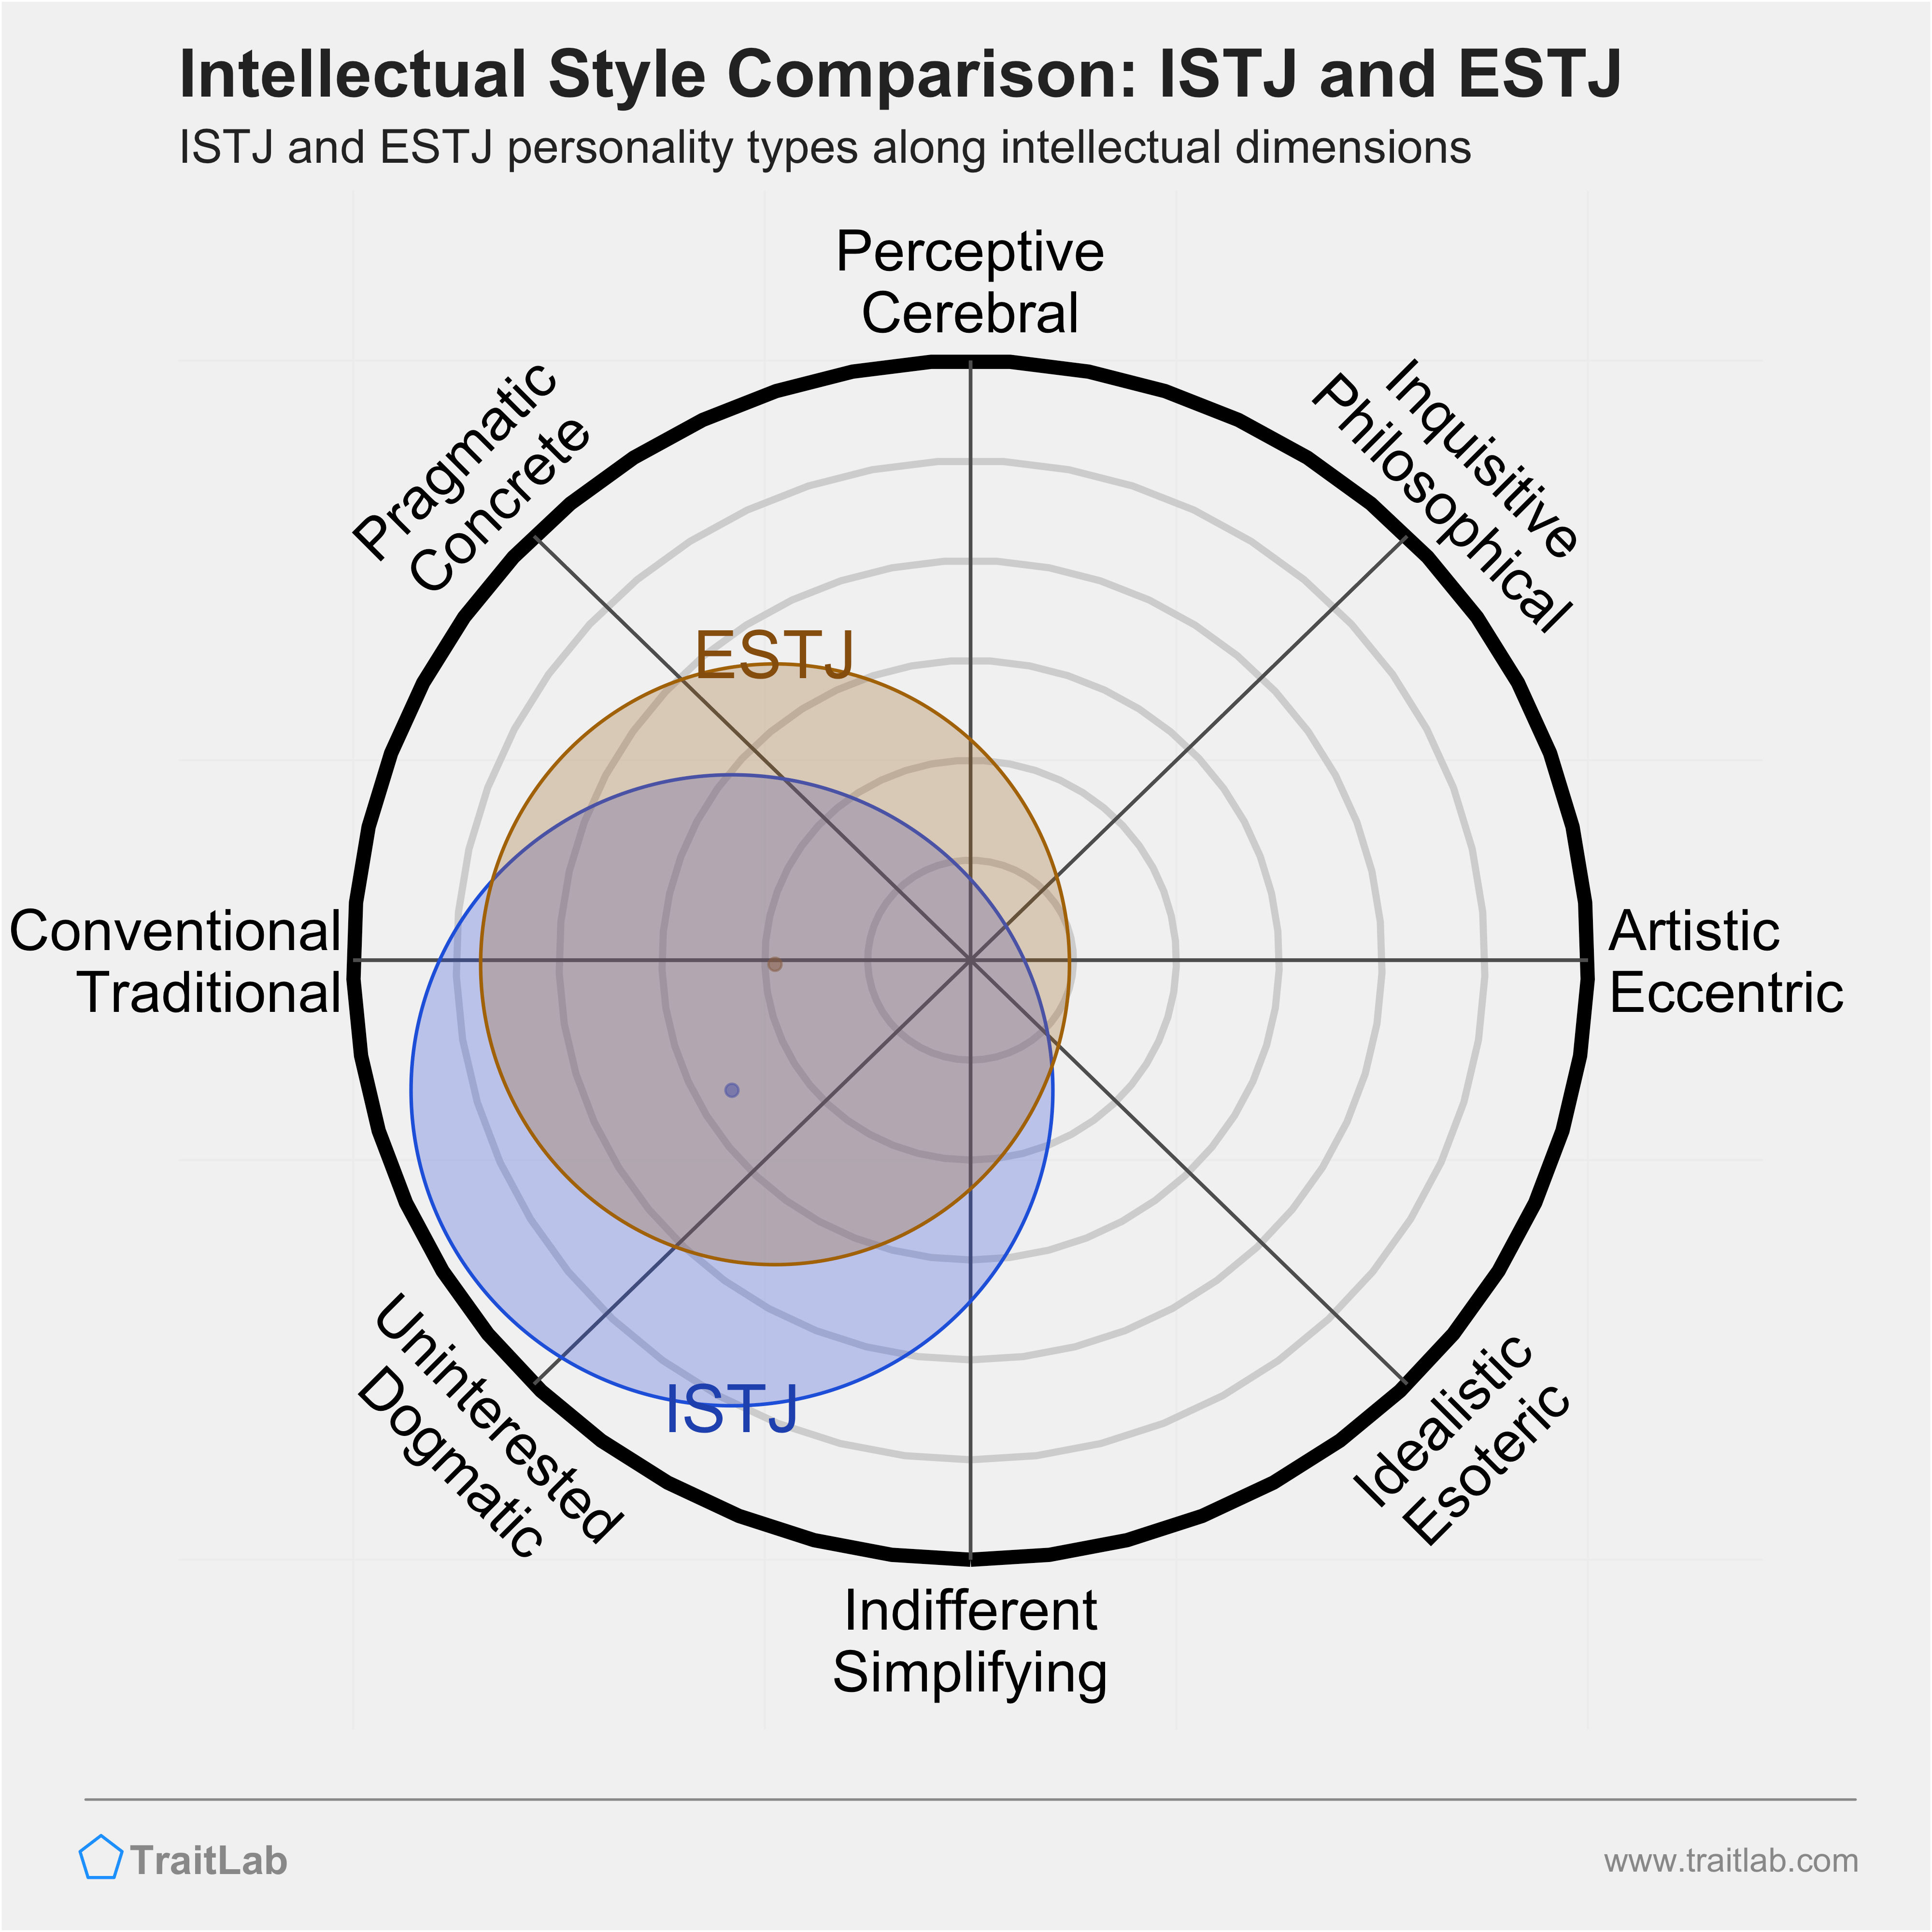 ISTJ and ESTJ comparison across intellectual dimensions